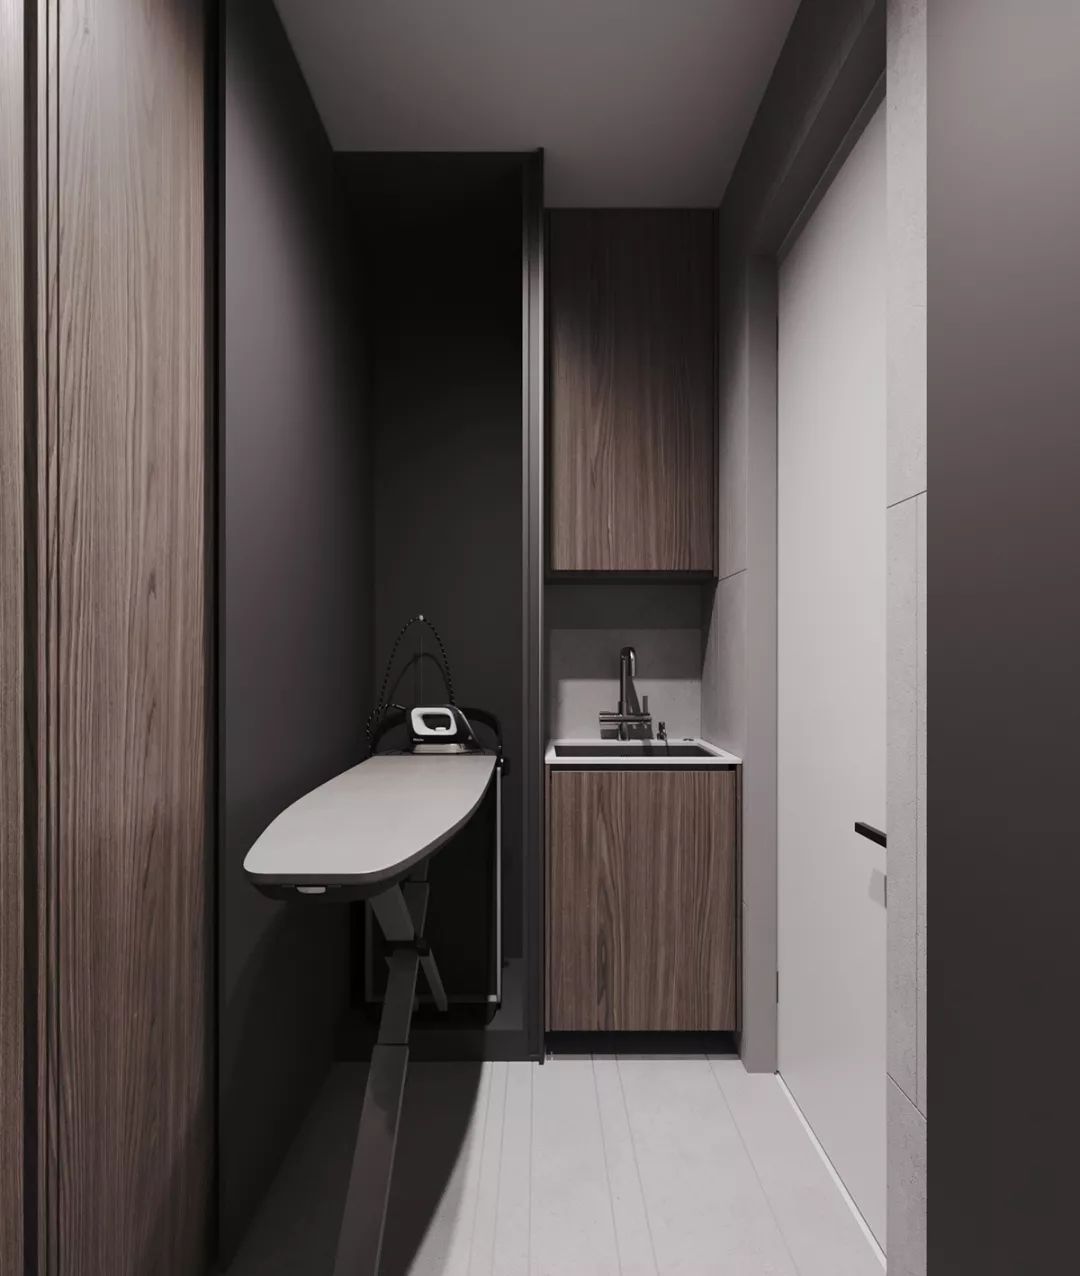 灰色和墨绿搭配内敛的木质肌理：182平米高雅气质住宅